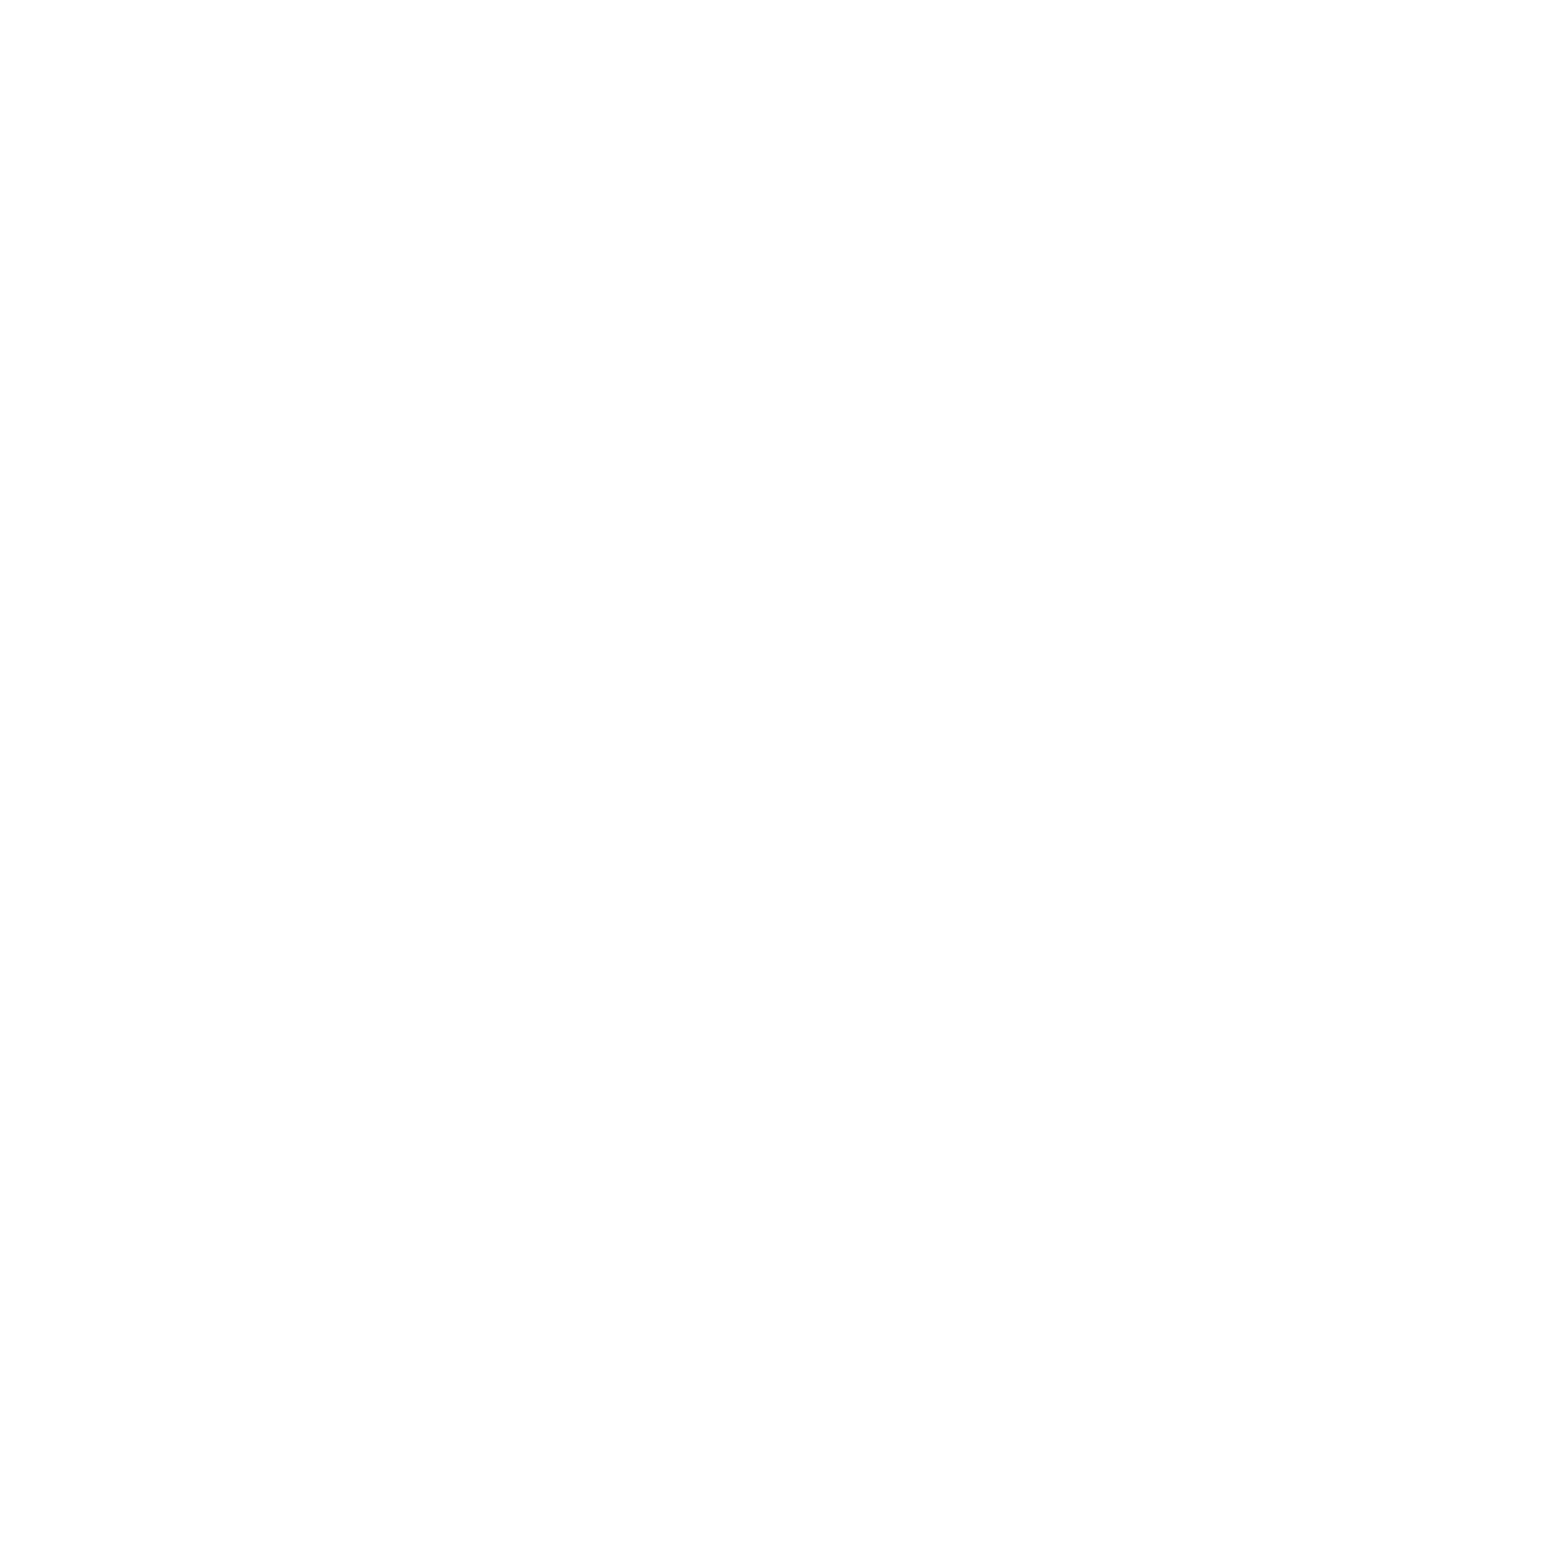 KechMart